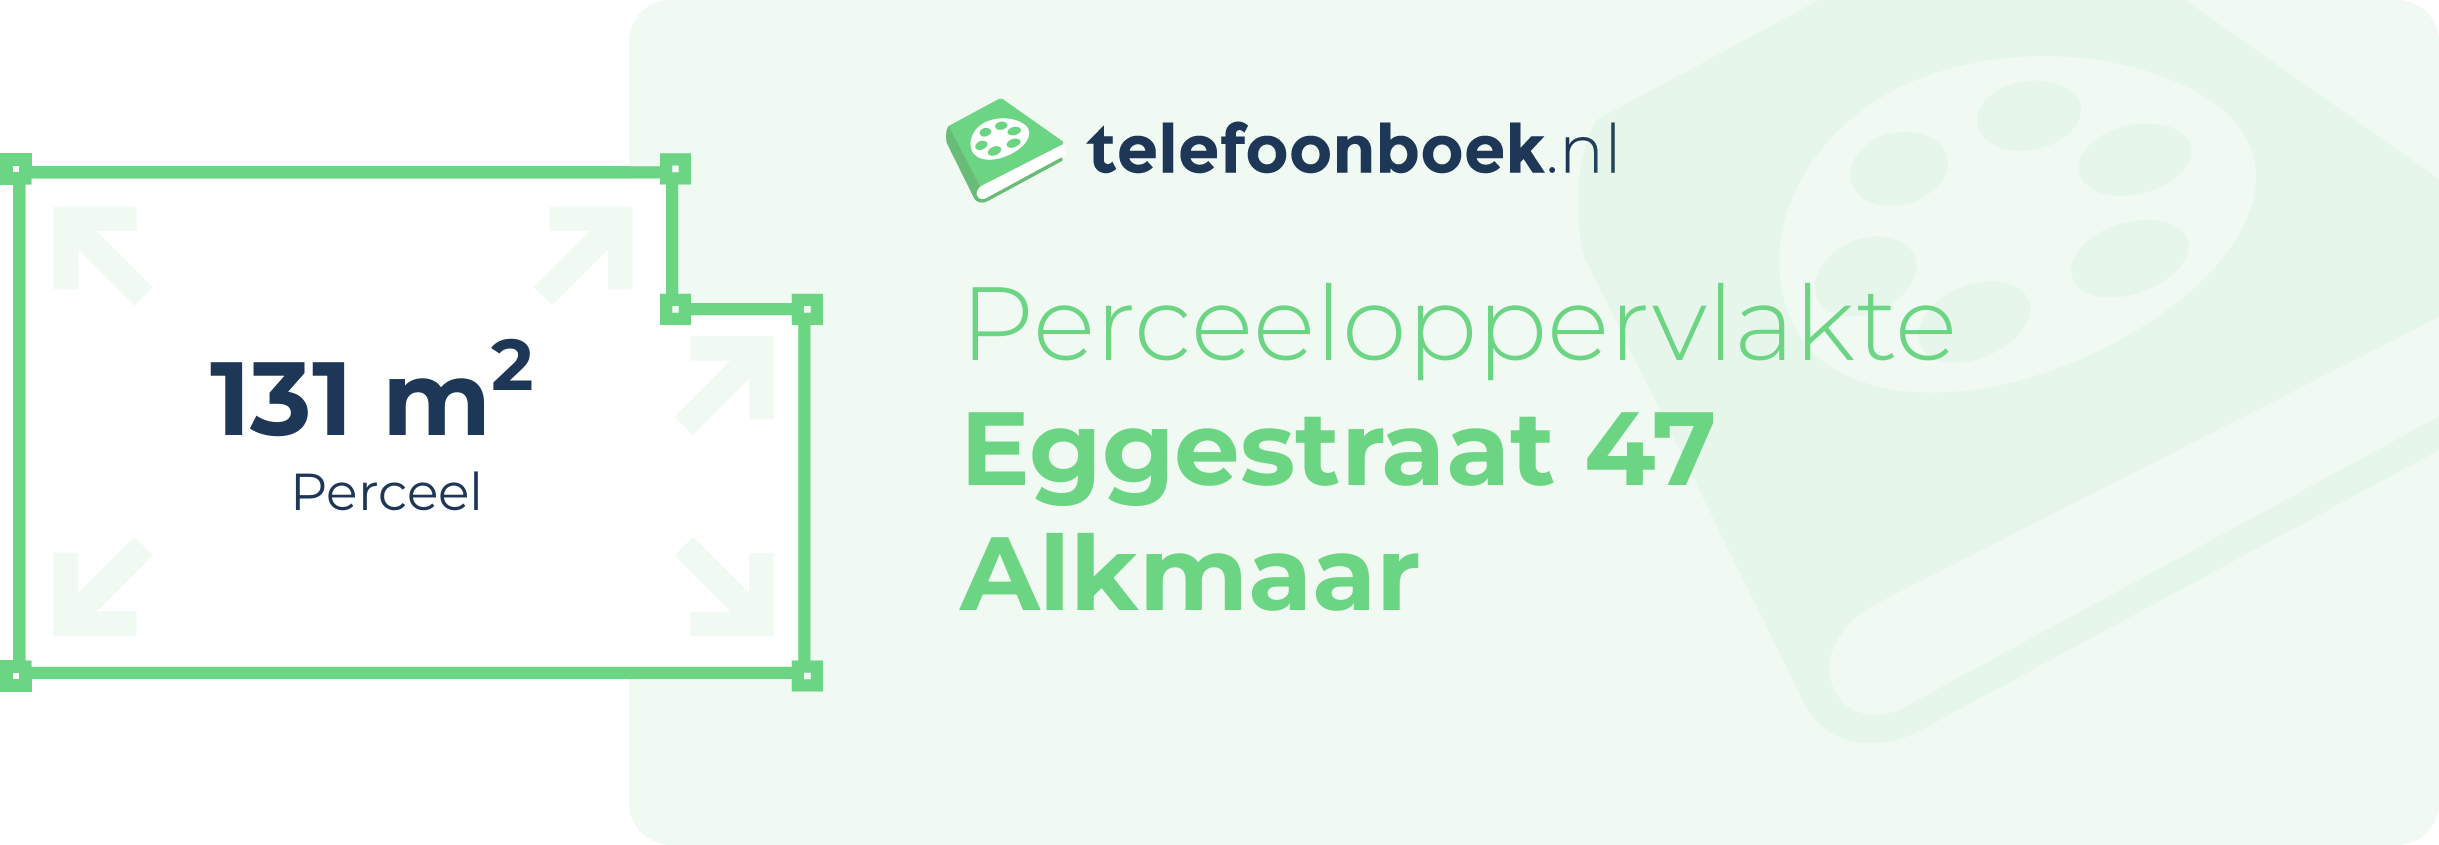 Perceeloppervlakte Eggestraat 47 Alkmaar